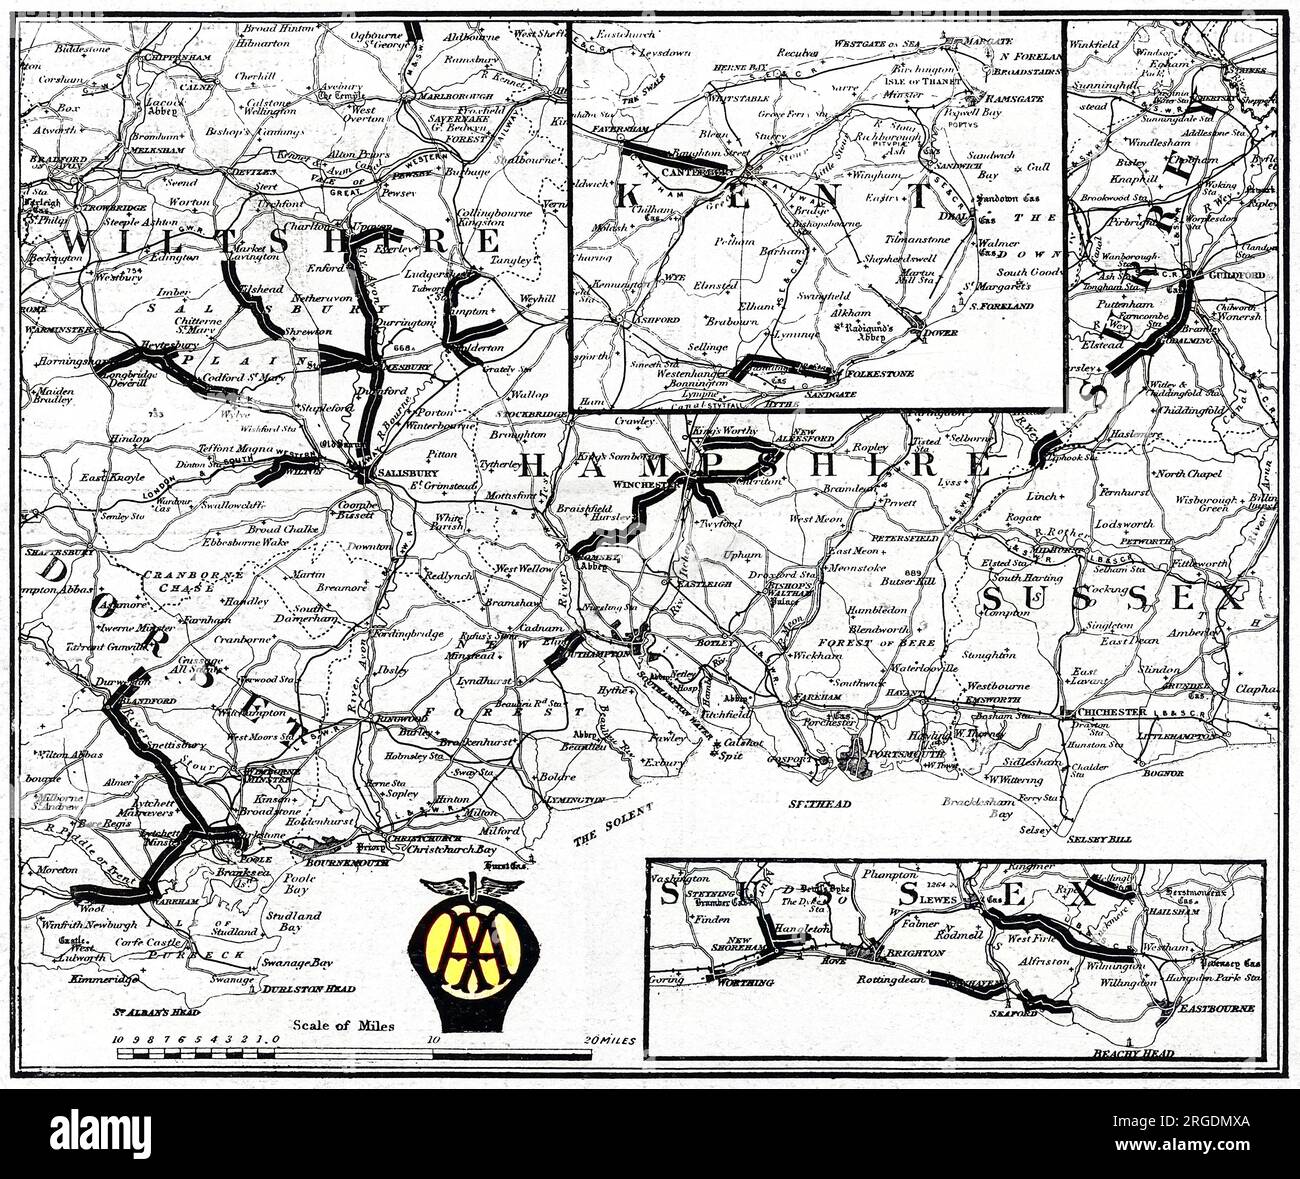 Eine Karte der südlichen Grafschaften Großbritanniens, die vom Automobilverband und dem Automobilverband erstellt wurde, um die Straßenabschnitte anzugeben, die durch den Militärverkehr stark beschädigt wurden und die zivilen Autofahrern zu vermeiden empfohlen wurden. Straßen in Wiltshire, Dorset, Hampshire, Sussex und Kent werden angezeigt. Stockfoto